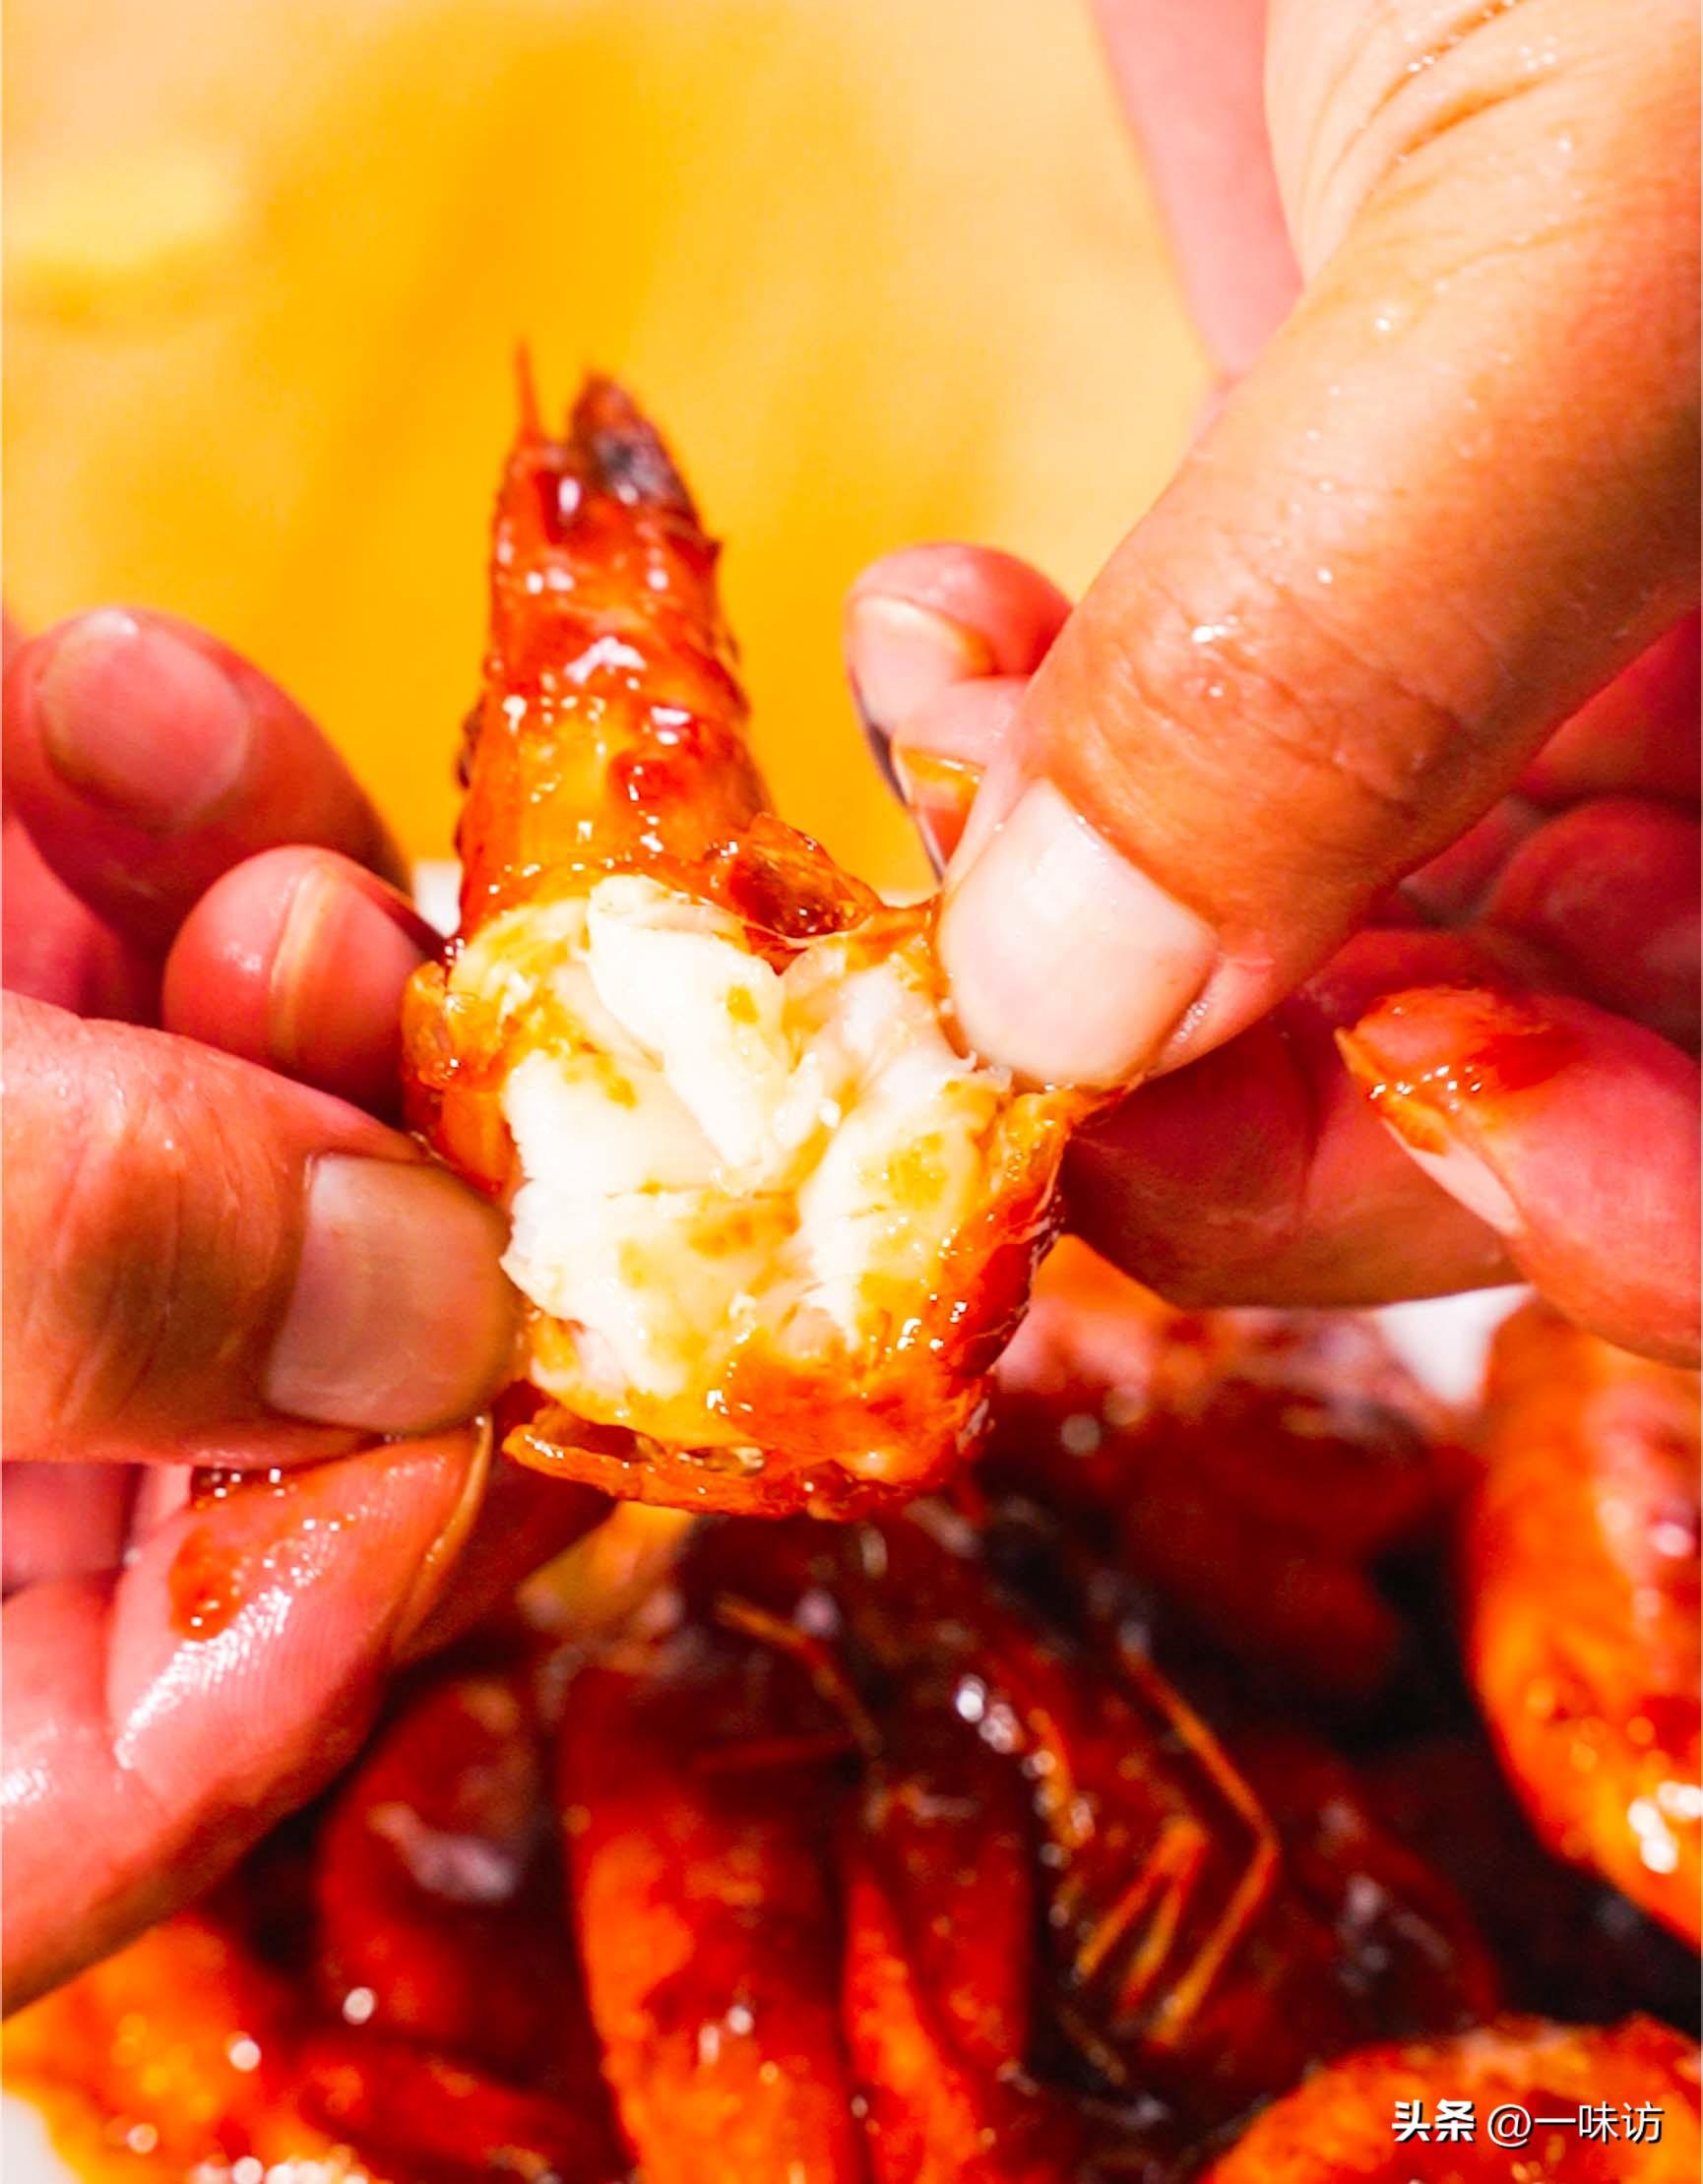 油焖大虾的做法家常 ，虾肉鲜嫩又入味，做法简单，比饭店的还香